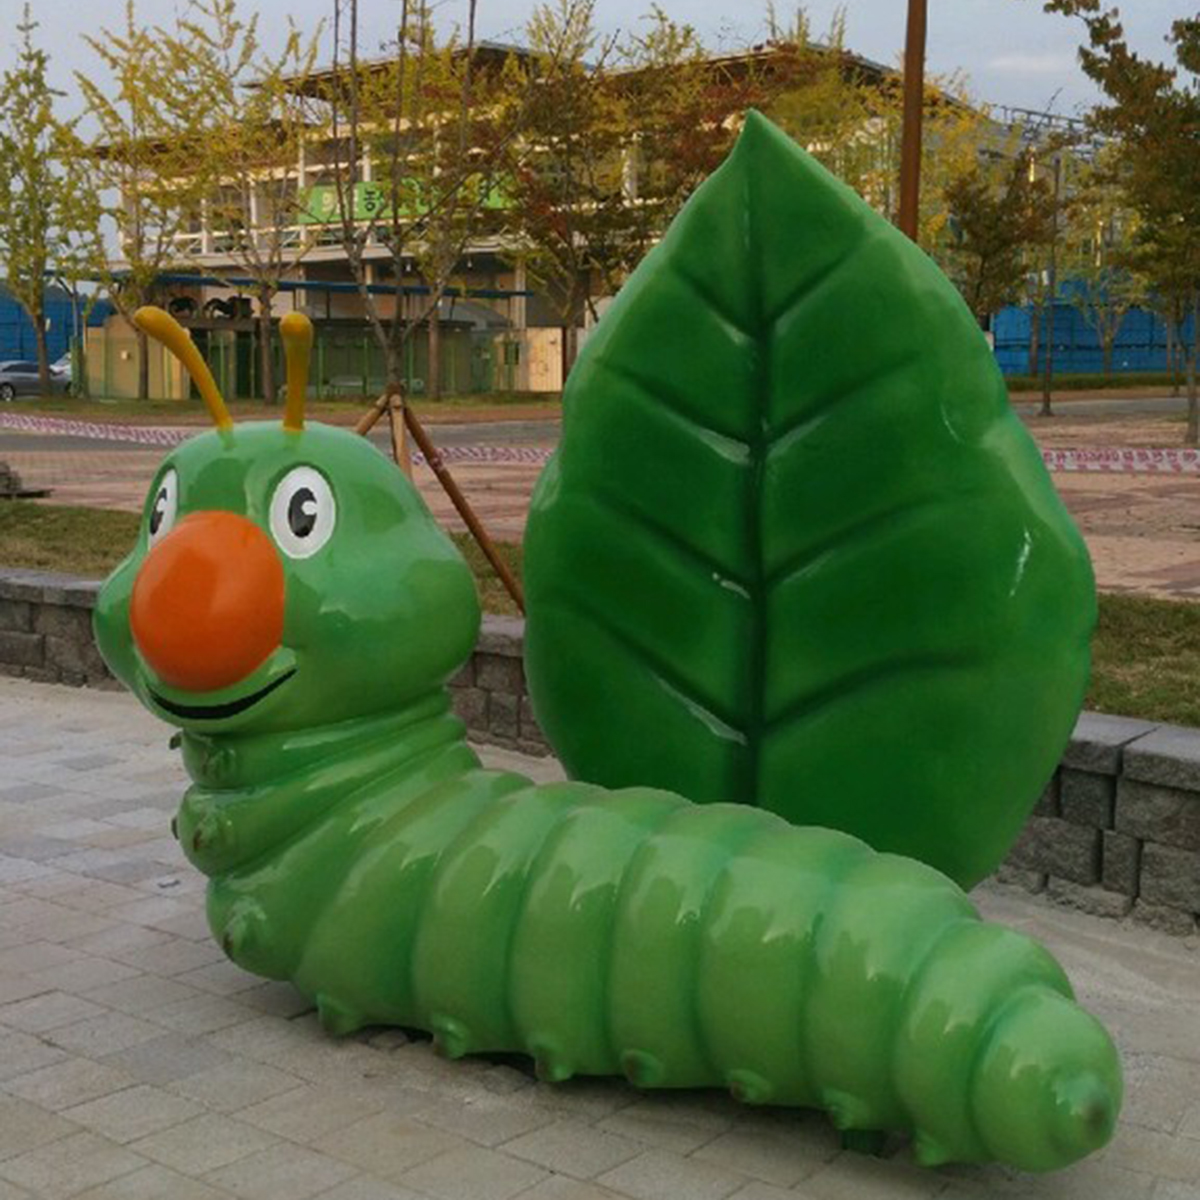 Cabbage worm sculpture